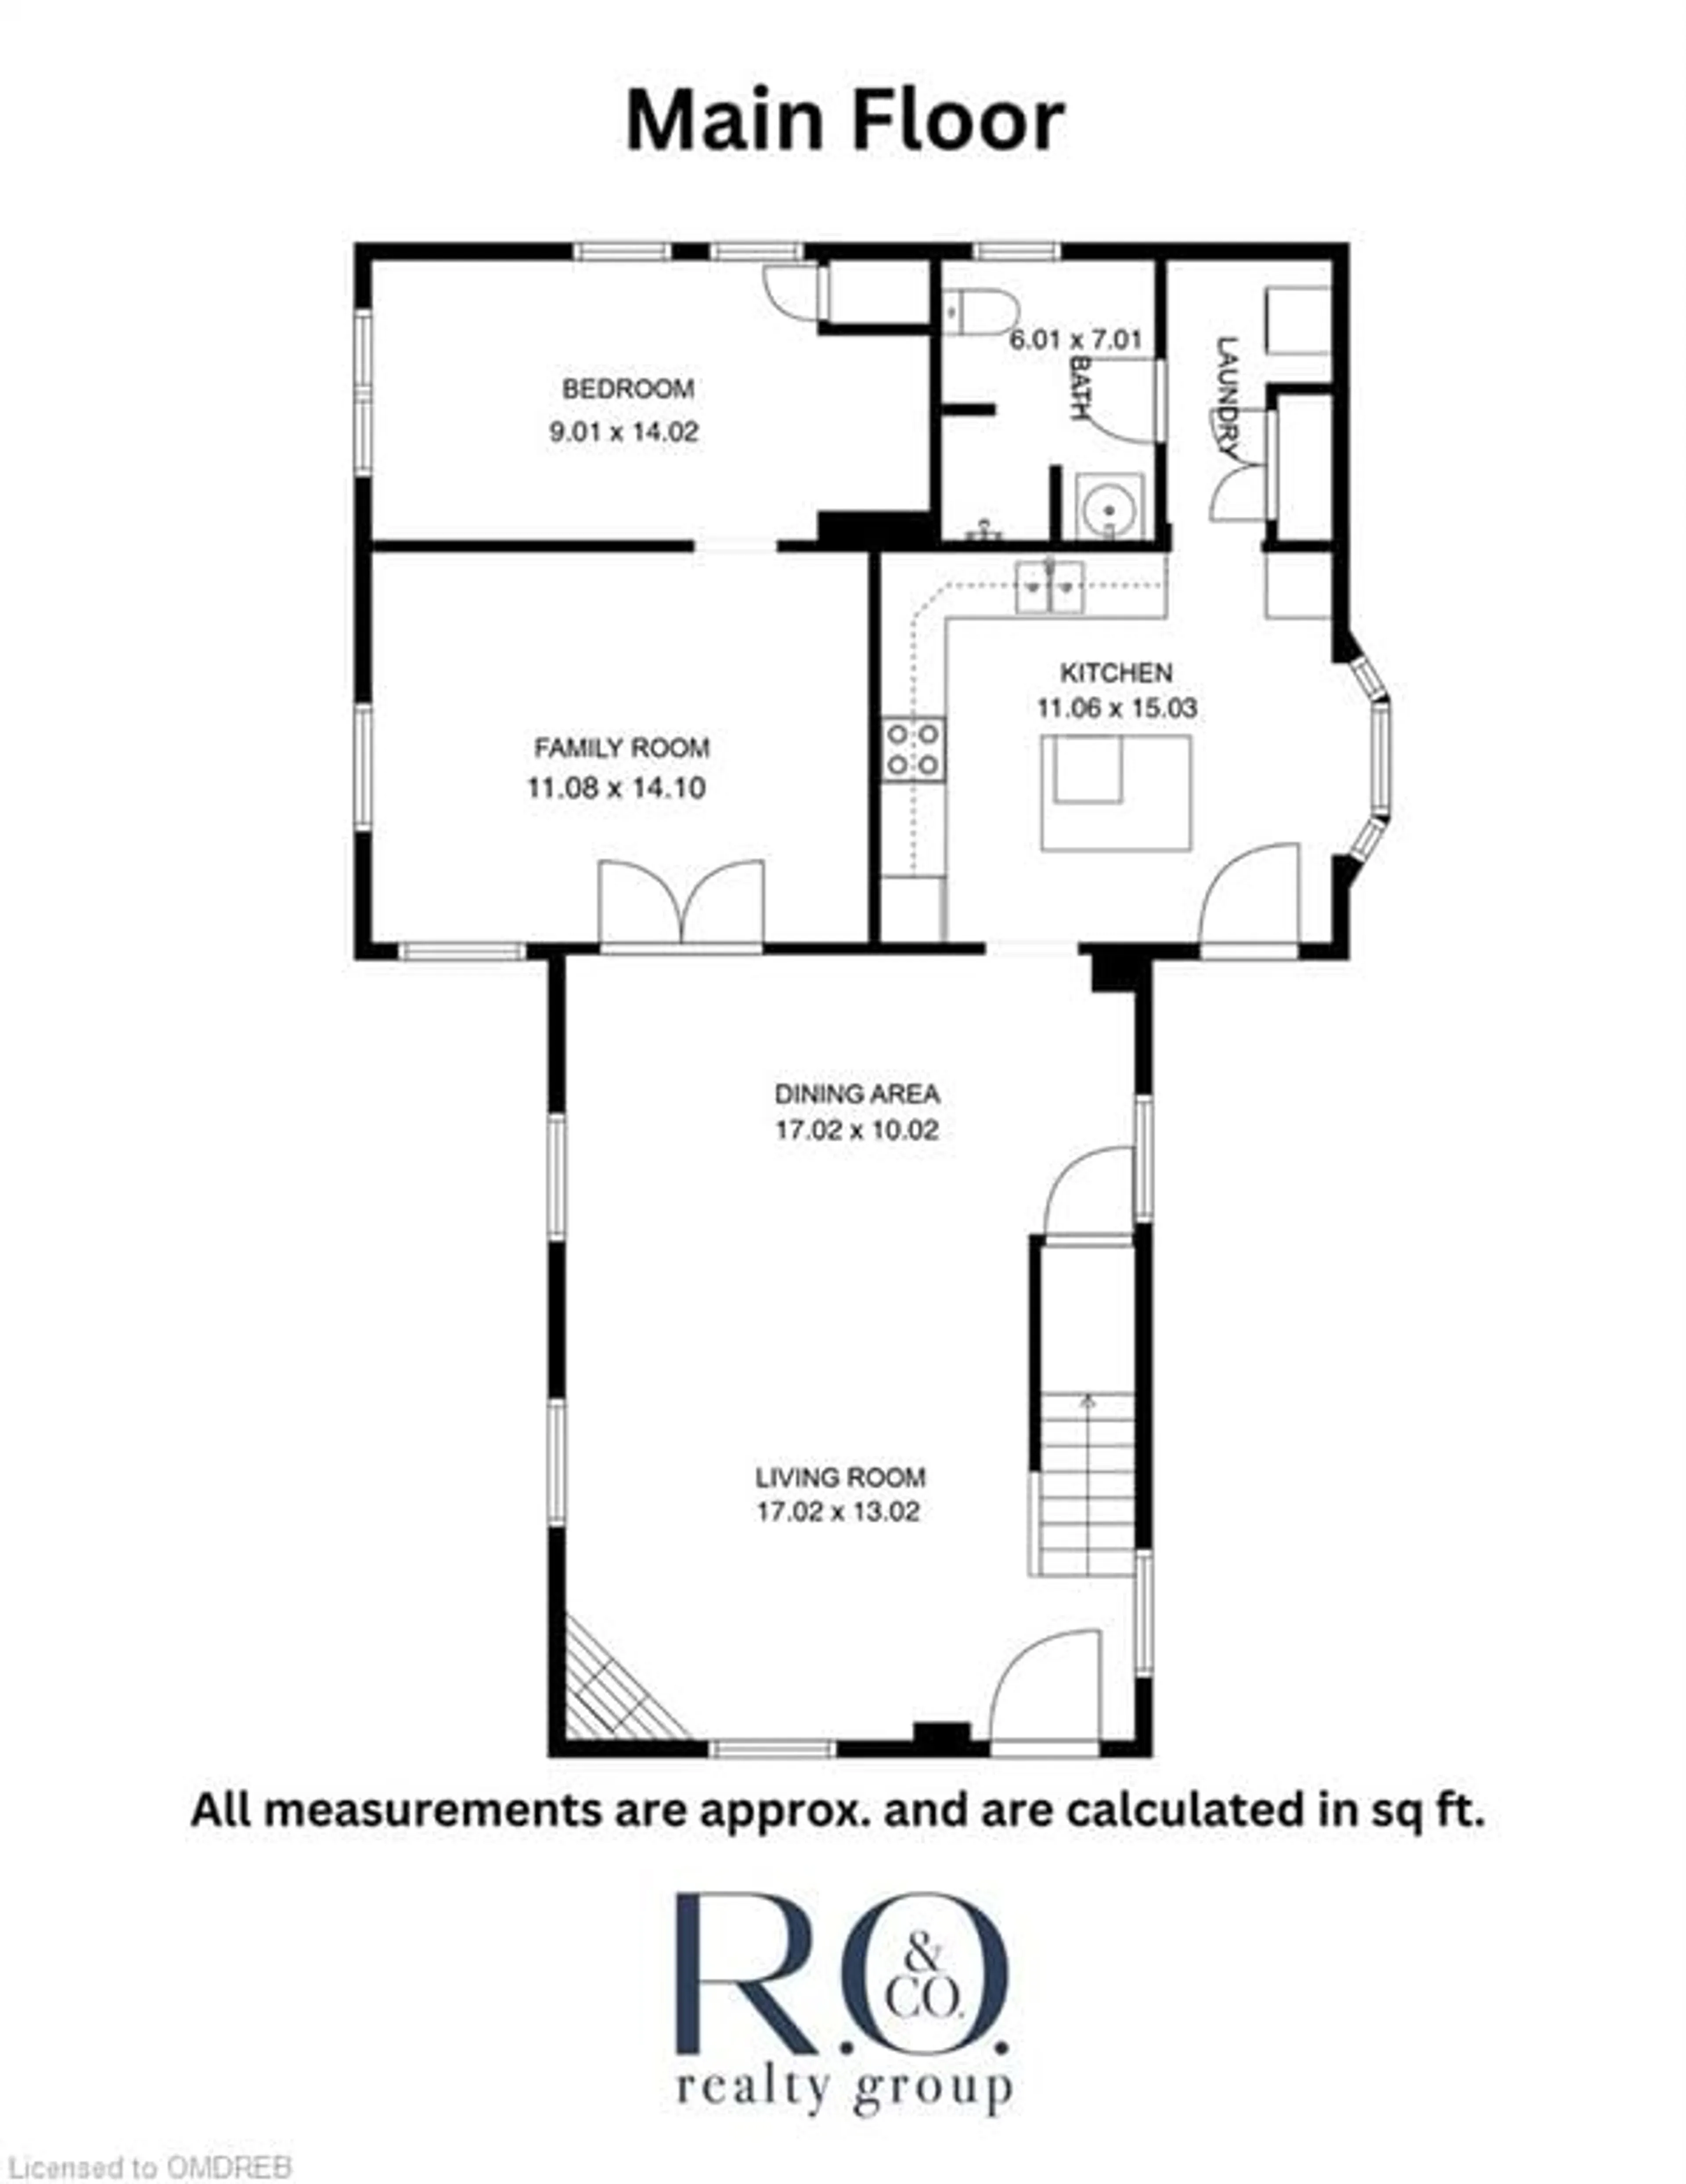 Floor plan for 124 Chisholm St, Oakville Ontario L6K 3J2